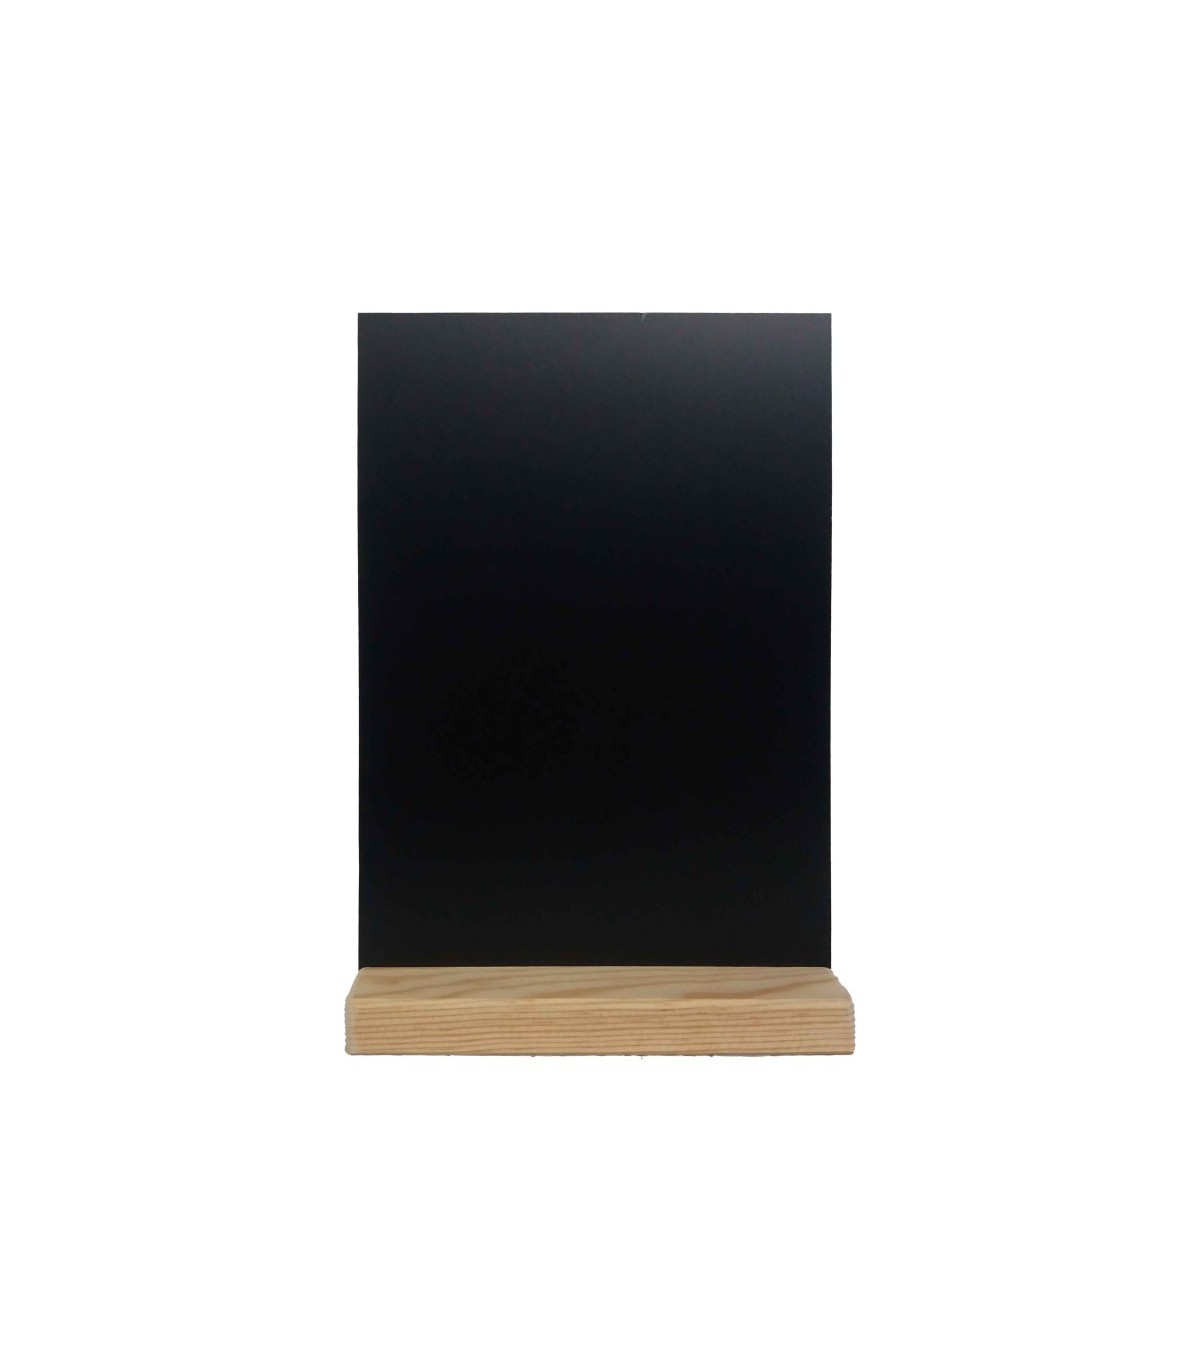 80x60 Cm Tableau Craie Noir Ardoise Mural, Cadre De Pin